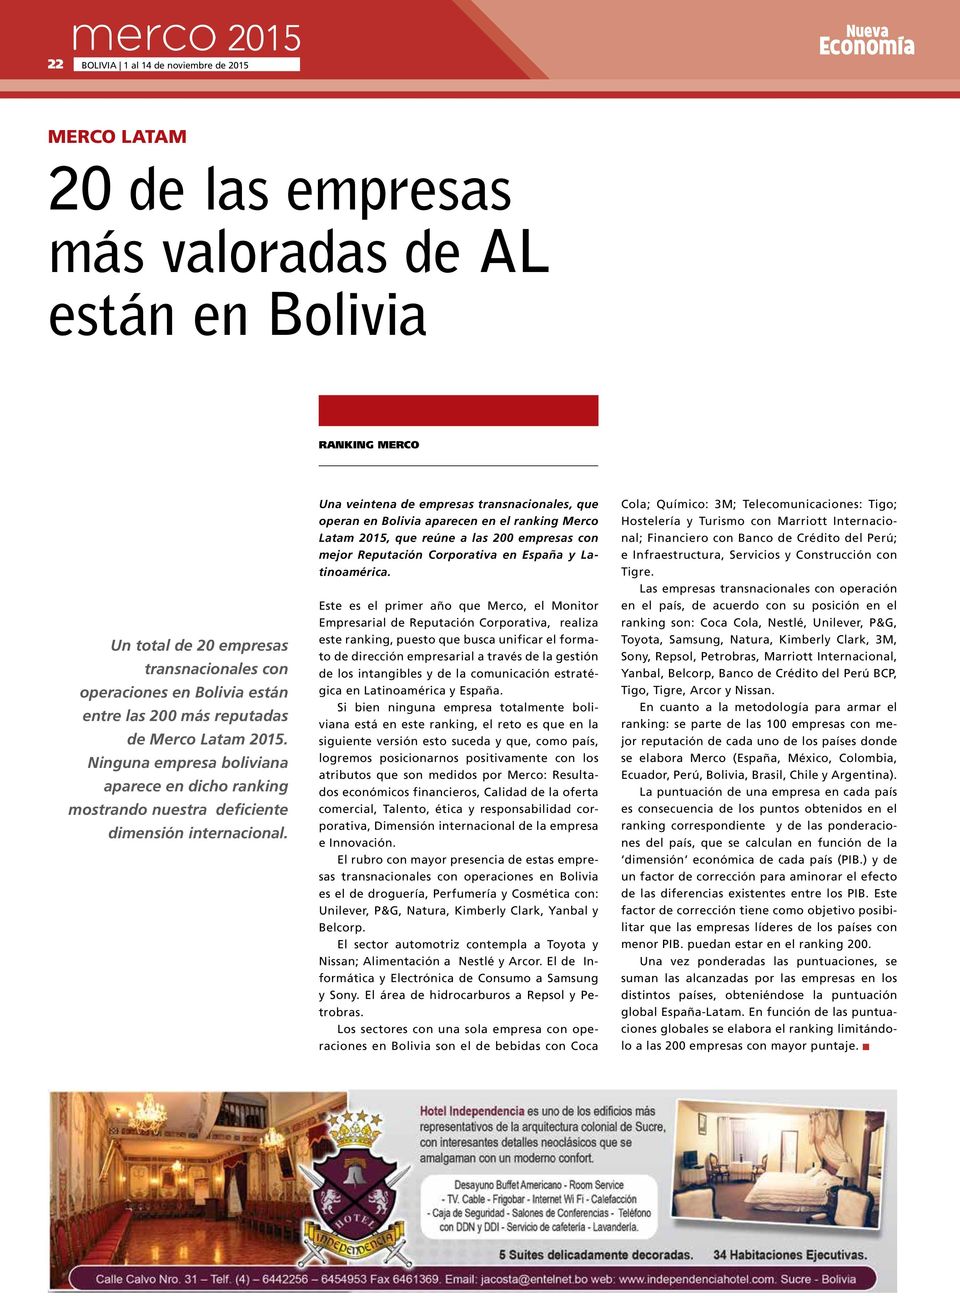 Una veintena de empresas transnacionales, que operan en Bolivia aparecen en el ranking Merco Latam, que reúne a las 200 empresas con mejor Reputación Corporativa en España y Latinoamérica.